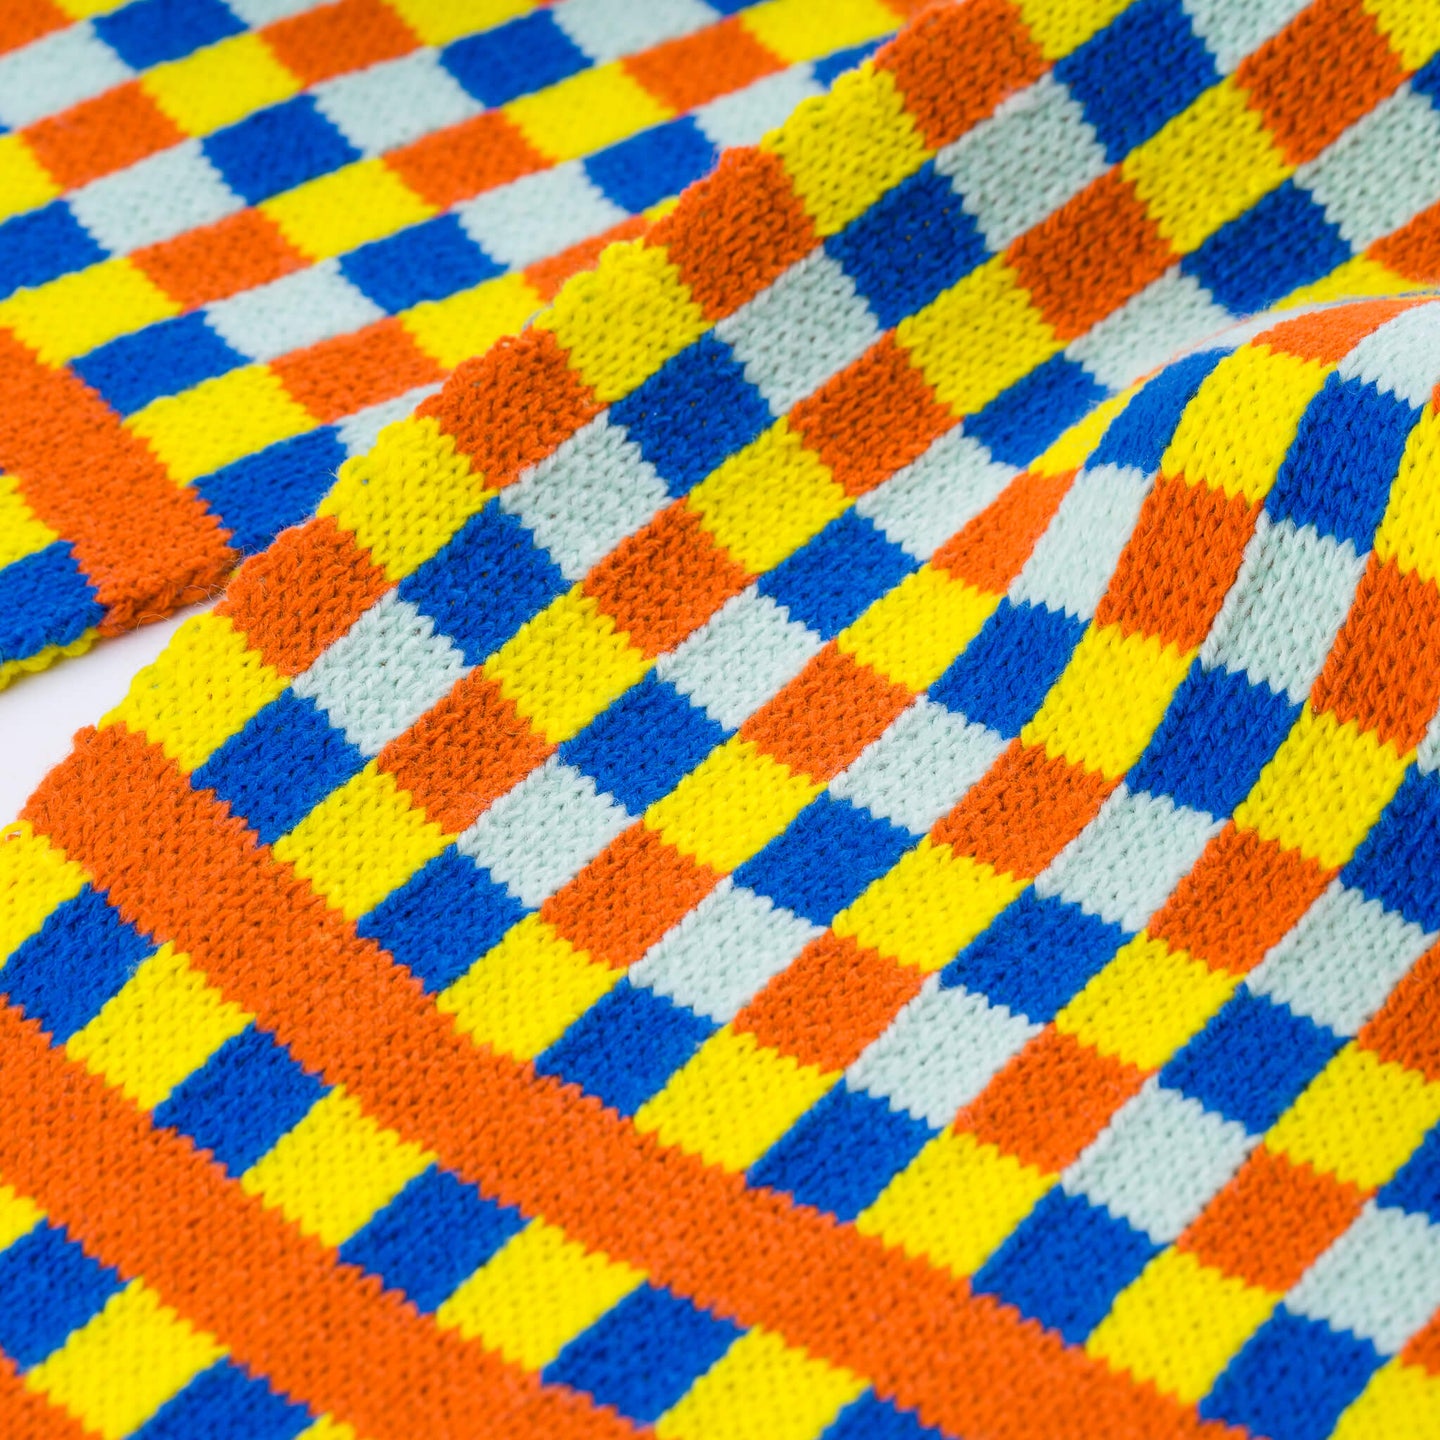 Square Square Knit Mini Scarf Gingham Jacquard Knit